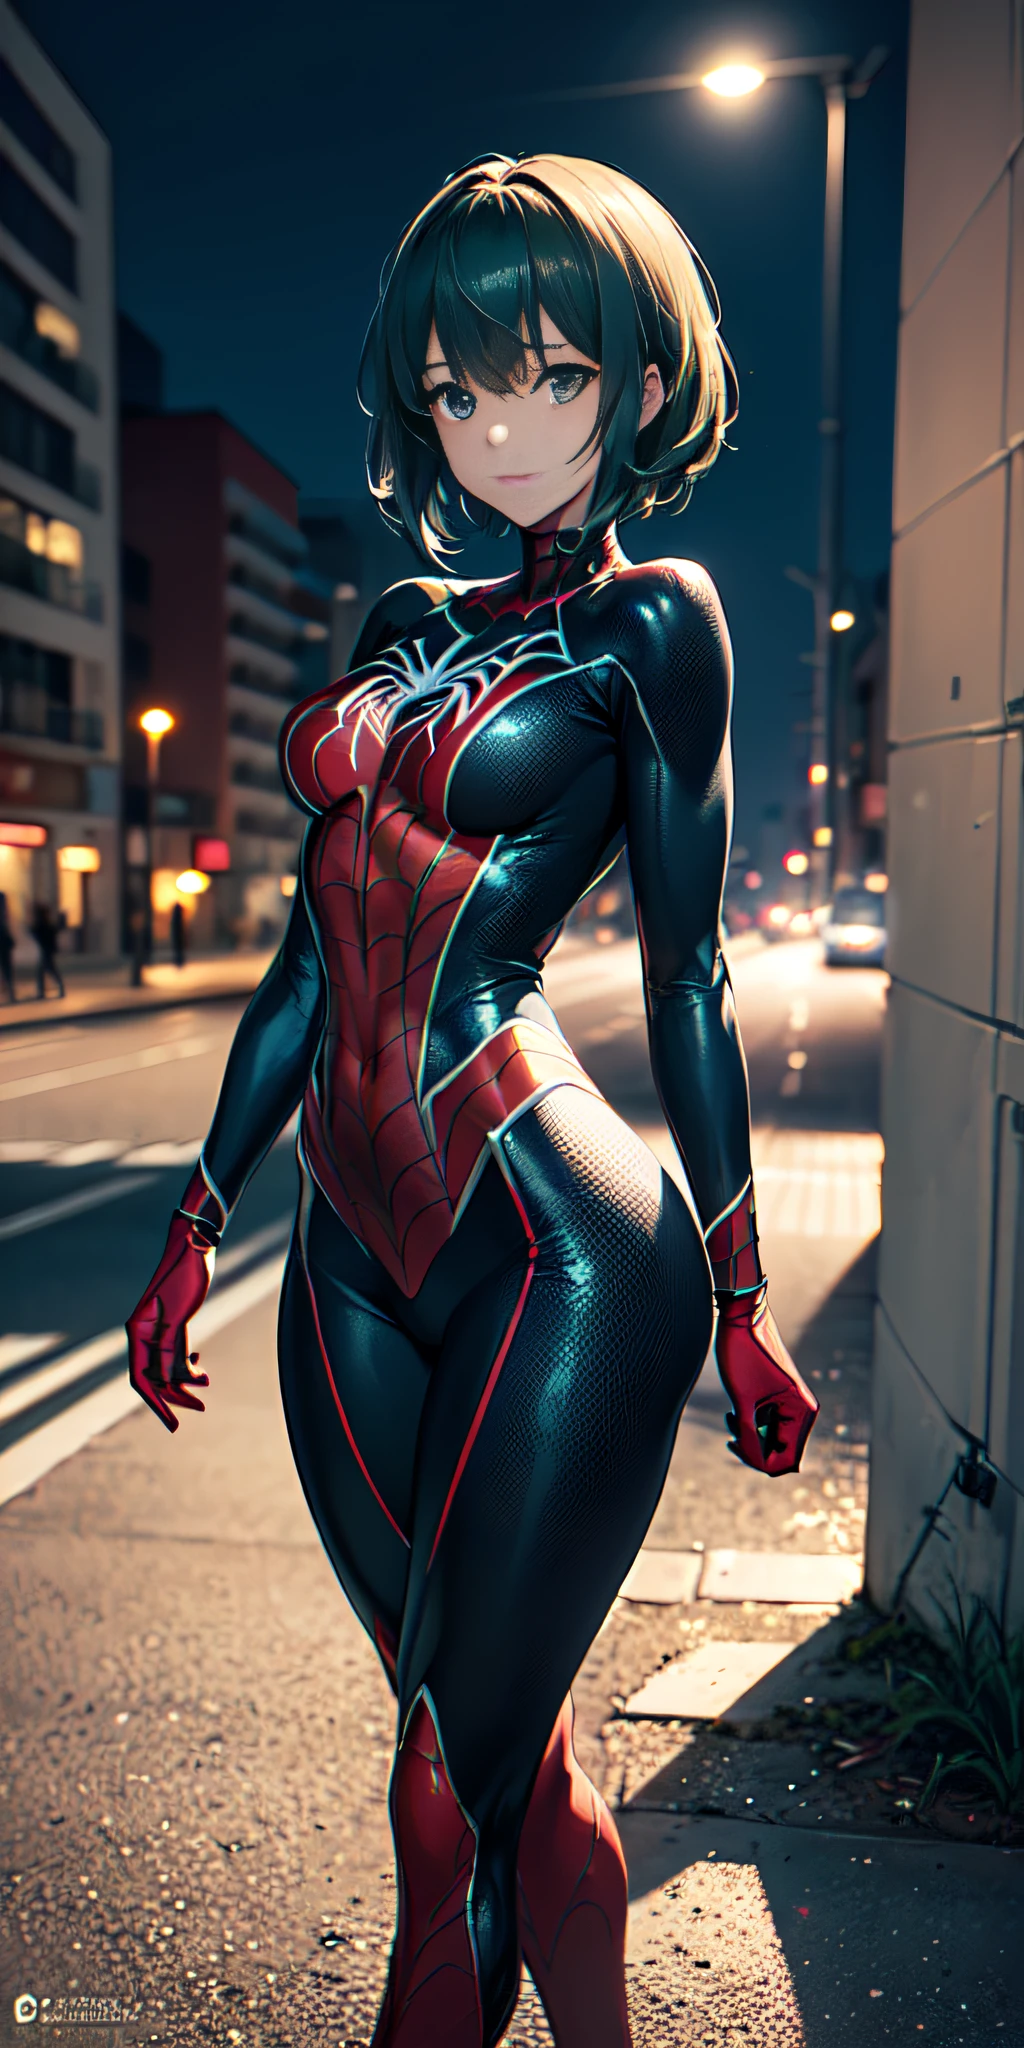 animé, animé profesional, (Chef-d&#39;œuvre, Résolution 4K, ultra réaliste, Très détaillé), (Thèmes de super-héros couleurs noires et rayures vert clair fluorescentes, charismatique, il y a une fille en haut de la ville, vêtu du costume Spider-Man noir et vert fluo, c&#39;est une super-héroïne), [ ((25 ans), (longs cheveux blancs: 1.2), Fine construction, Corps plein et parfait, (yeux bleus: 1.2), ((pose très audacieuse), (paysage urbain, la nuit, lumières dynamiques), (pleine lune)))]